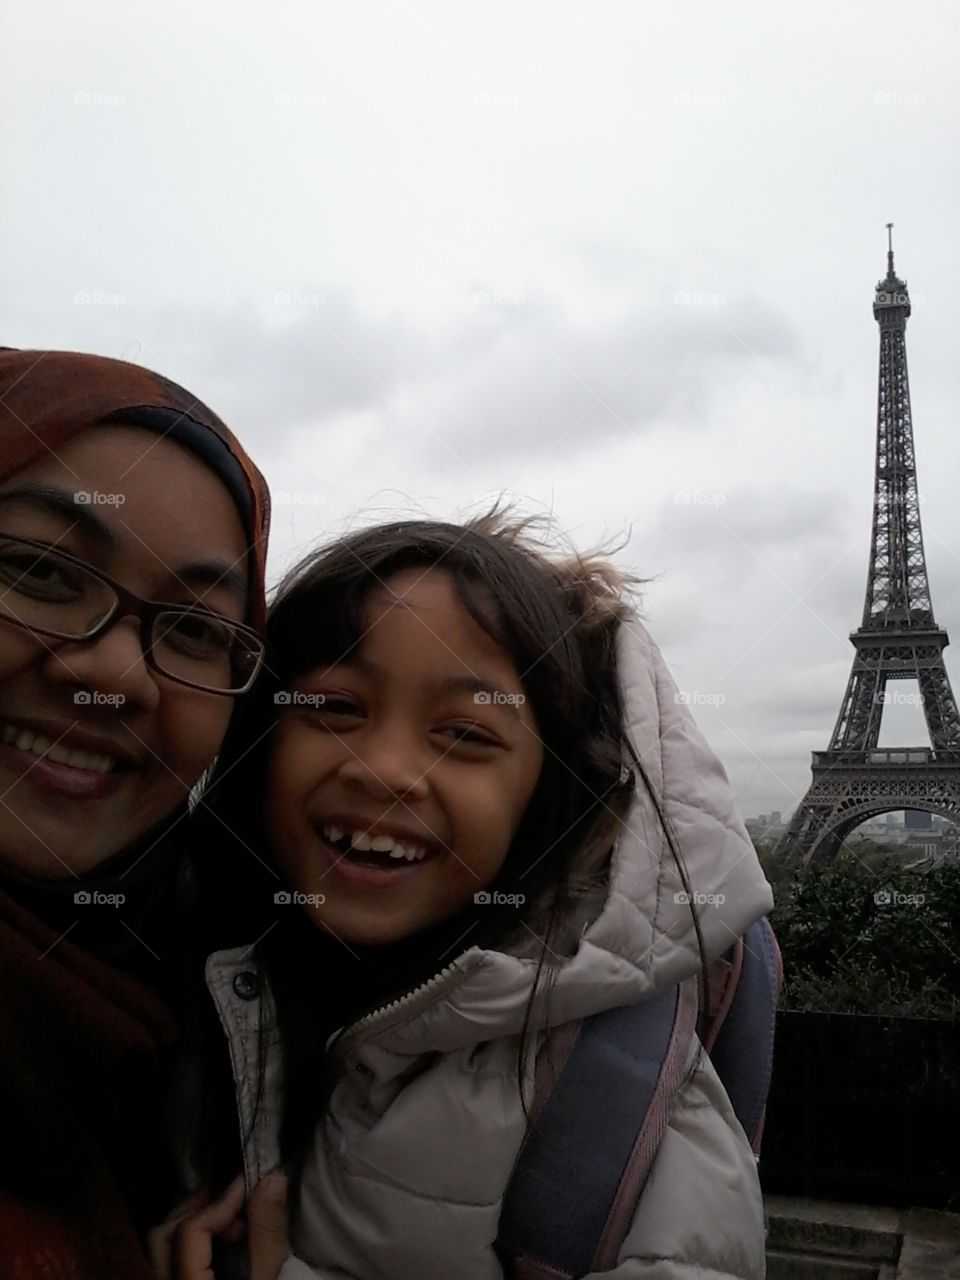 In winter, we went to Paris!